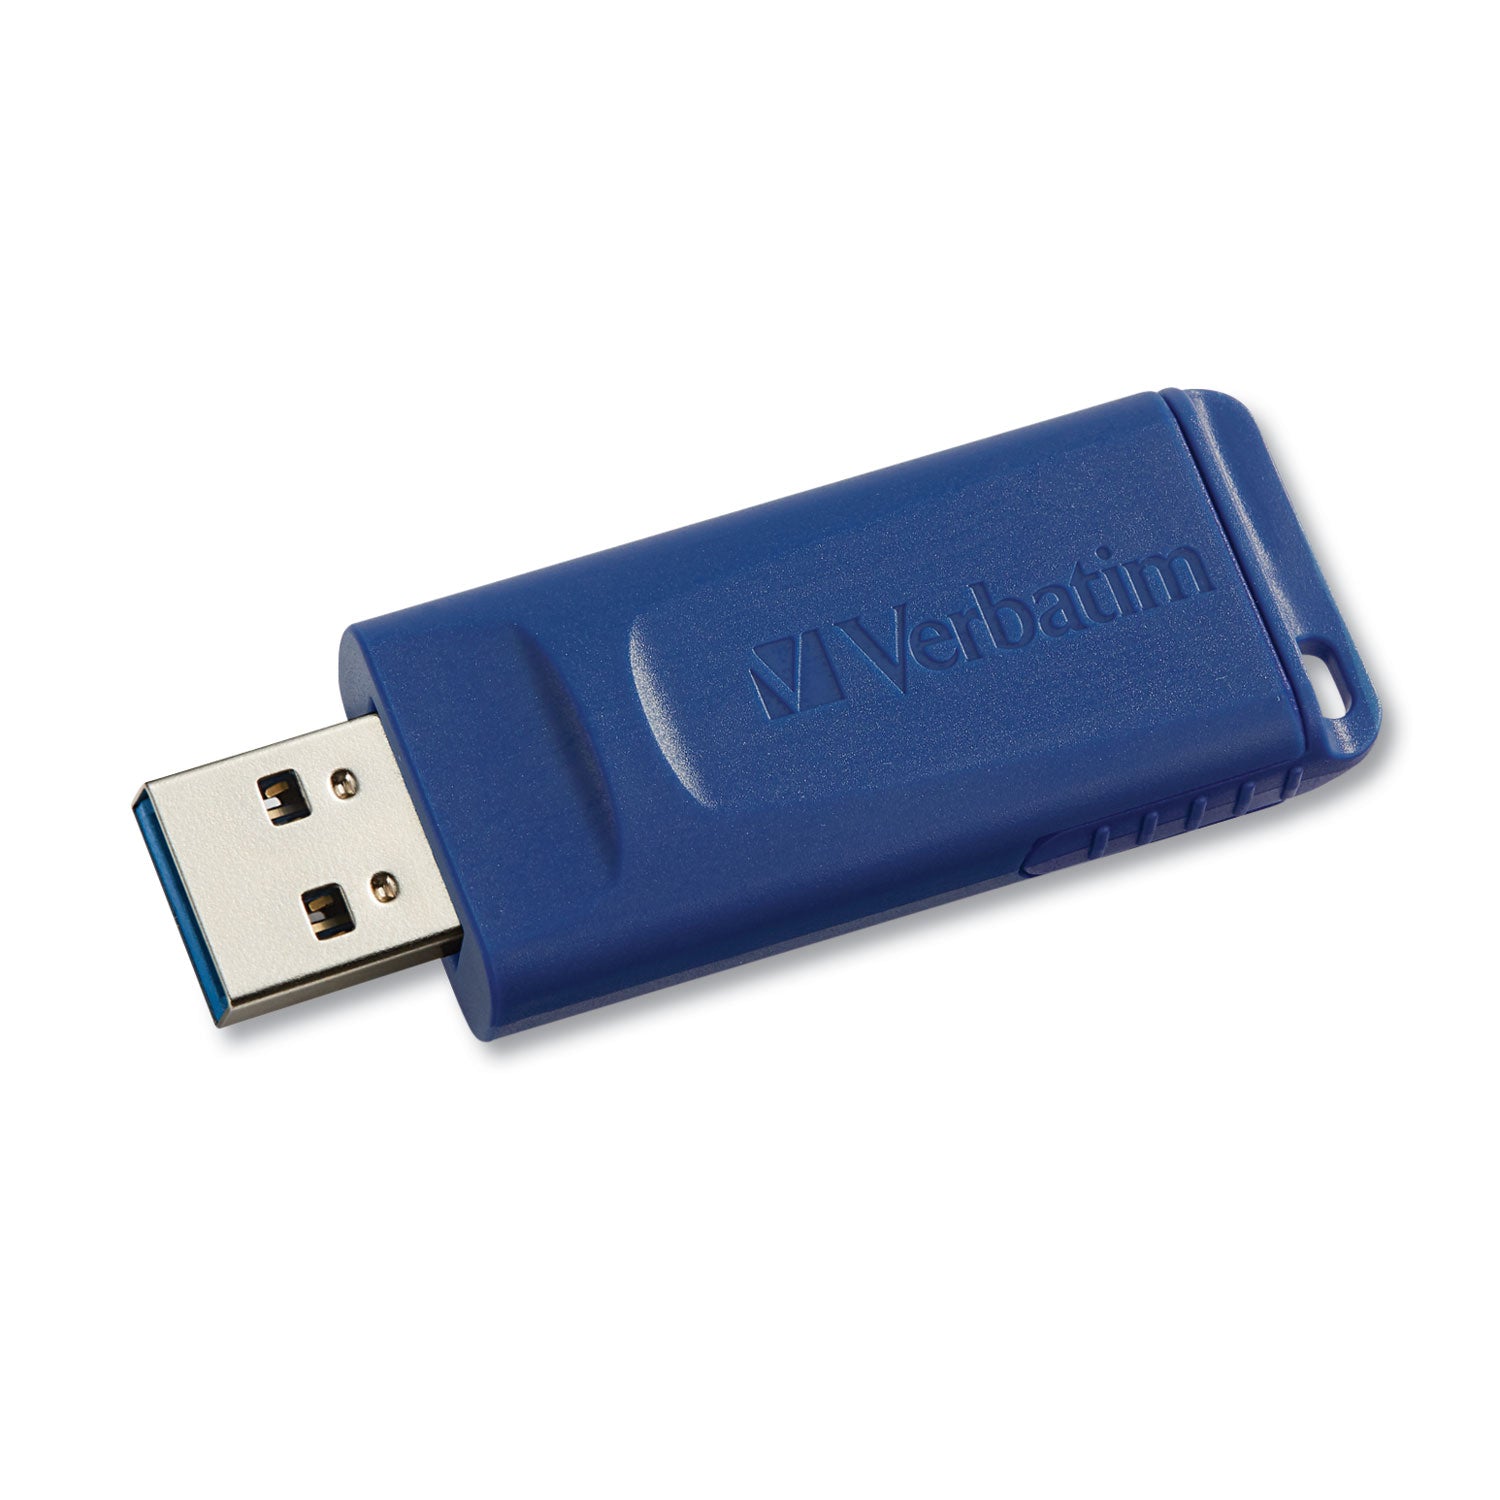 Classic USB 2.0 Flash Drive, 8 GB, Blue - 4